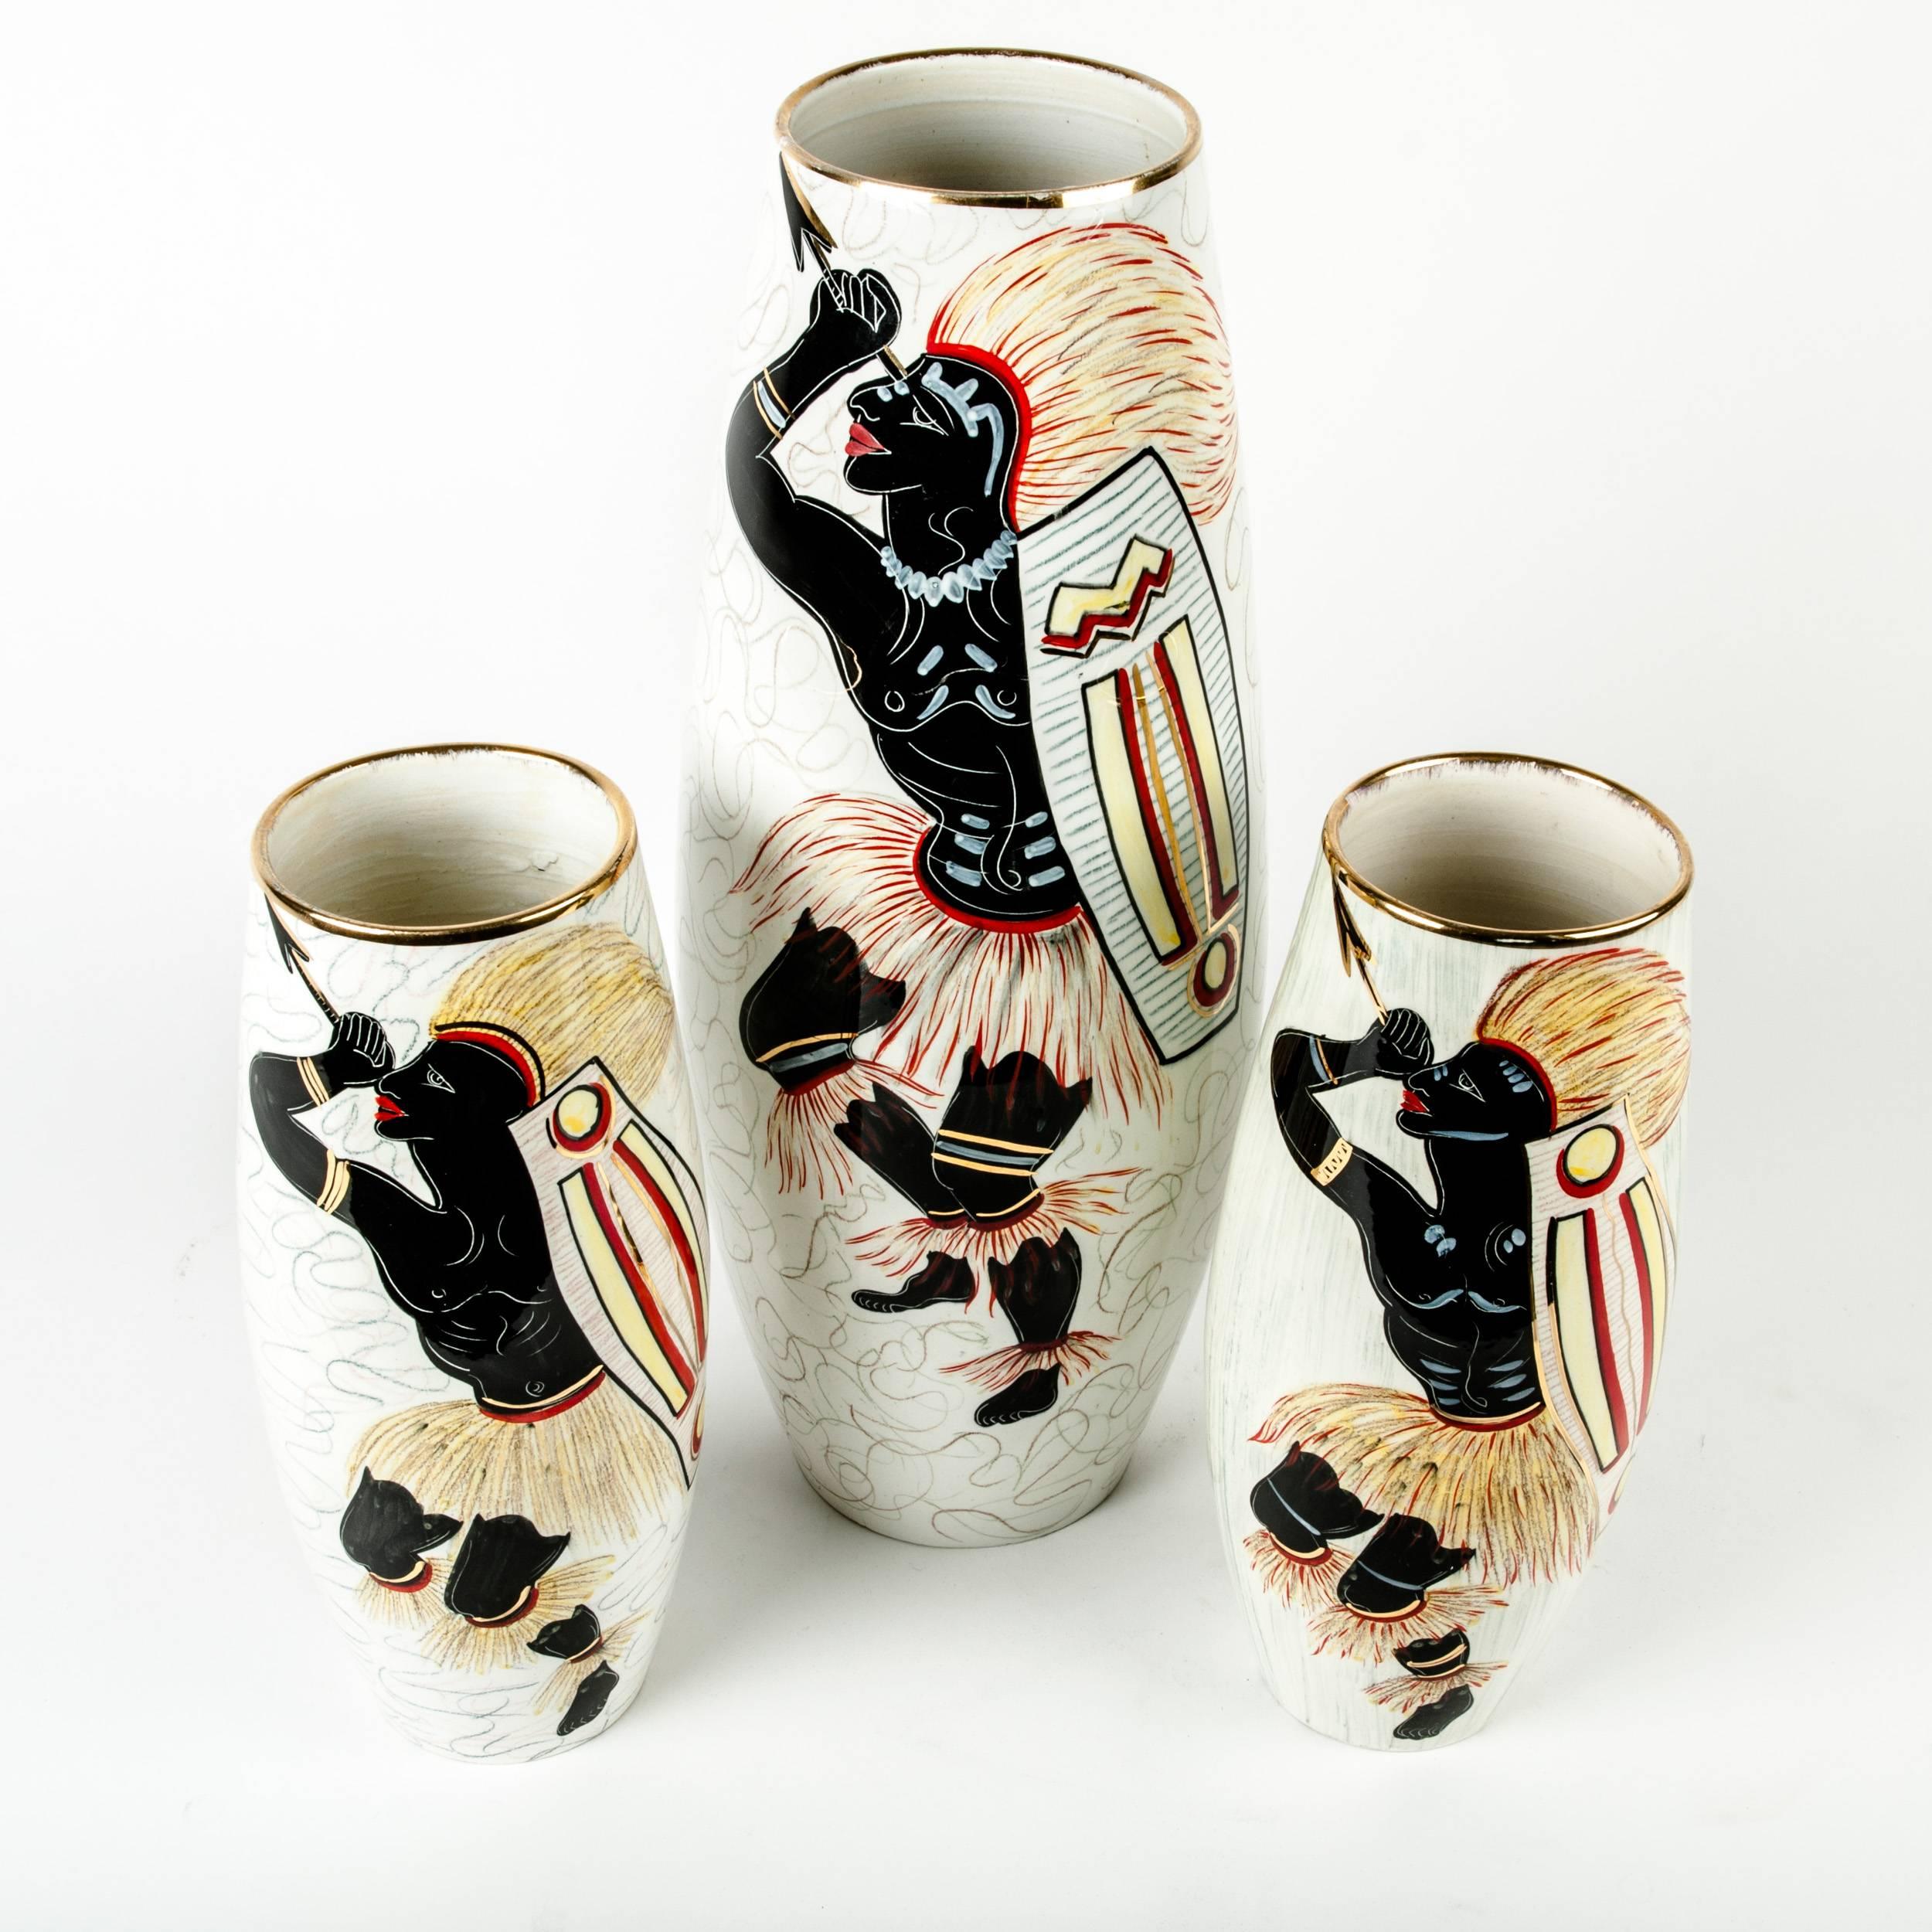 Art Deco Glazed Porcelain Set Decorative Pieces / Vases